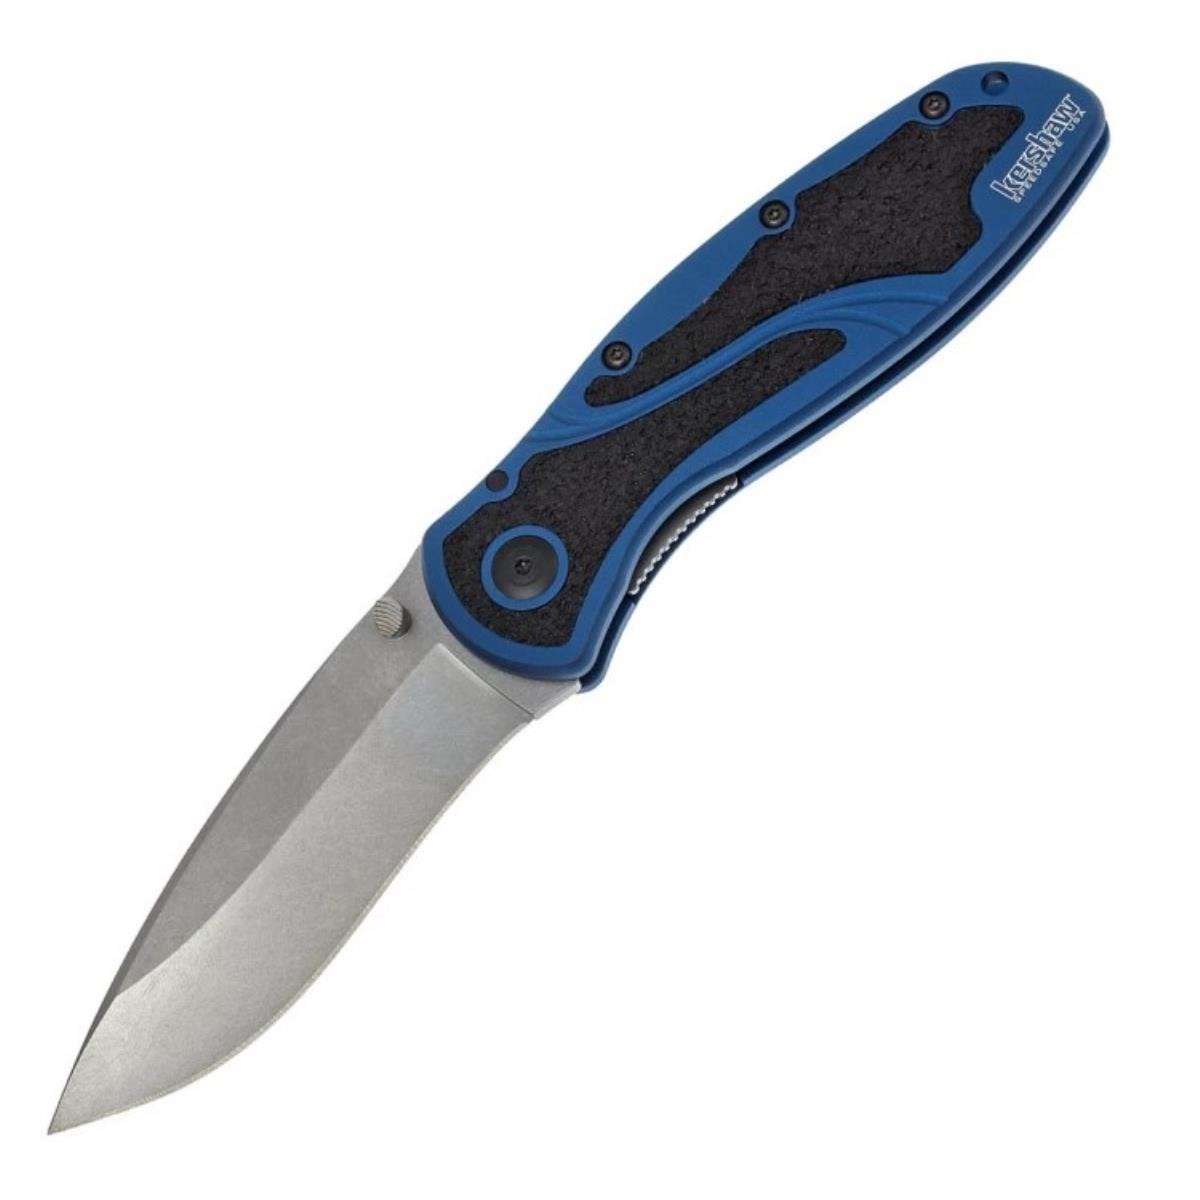 Нож склад., алюм. рук-ть синяя, клинок Sandvik 14C28N - K1670NBSW Blur KERSHAW лезвия для ножа технического fit